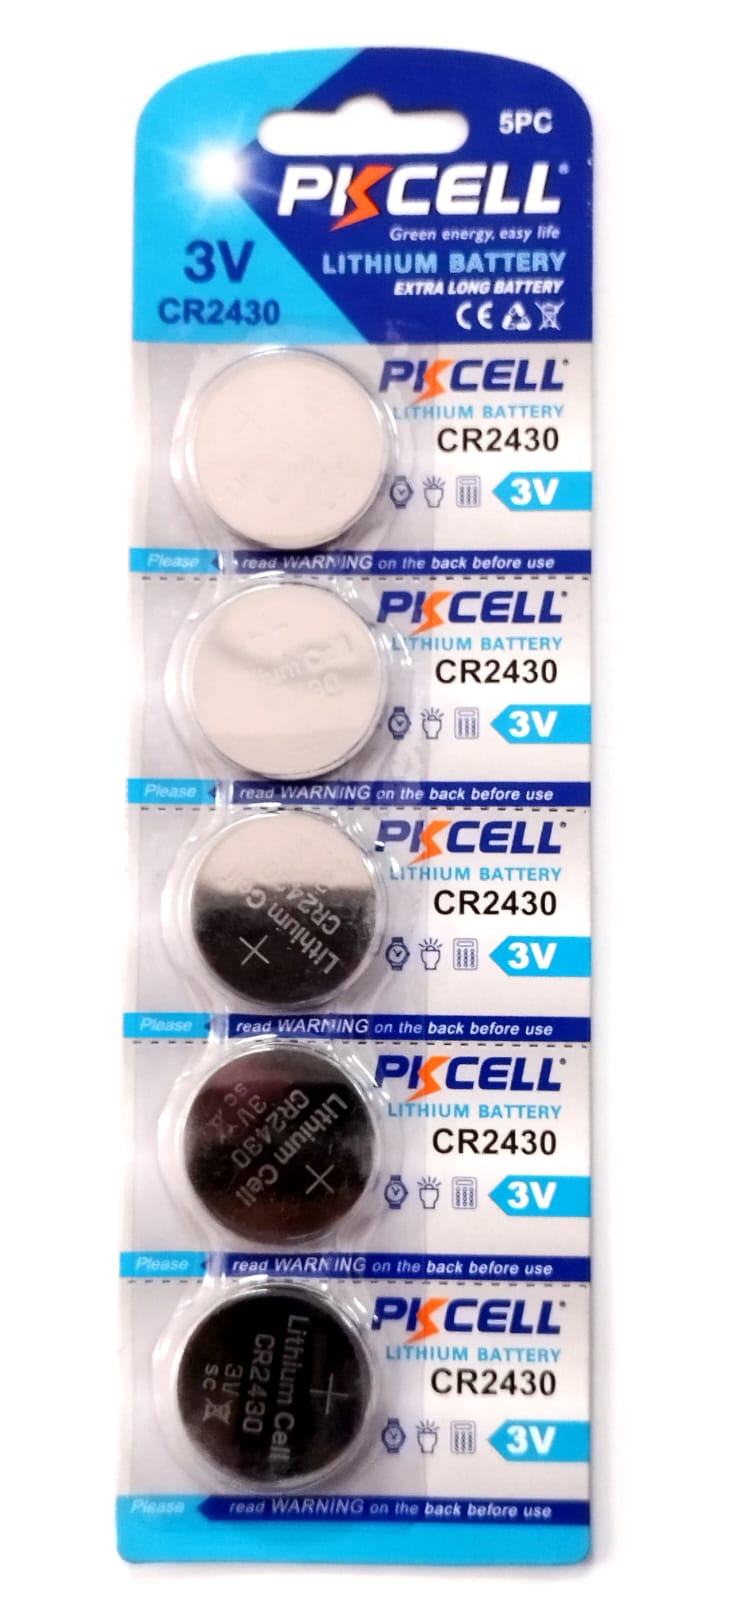 PILA para Reloj Control Juguete Pkcell 3V CR2430 Lithium Bateria - Pkcell